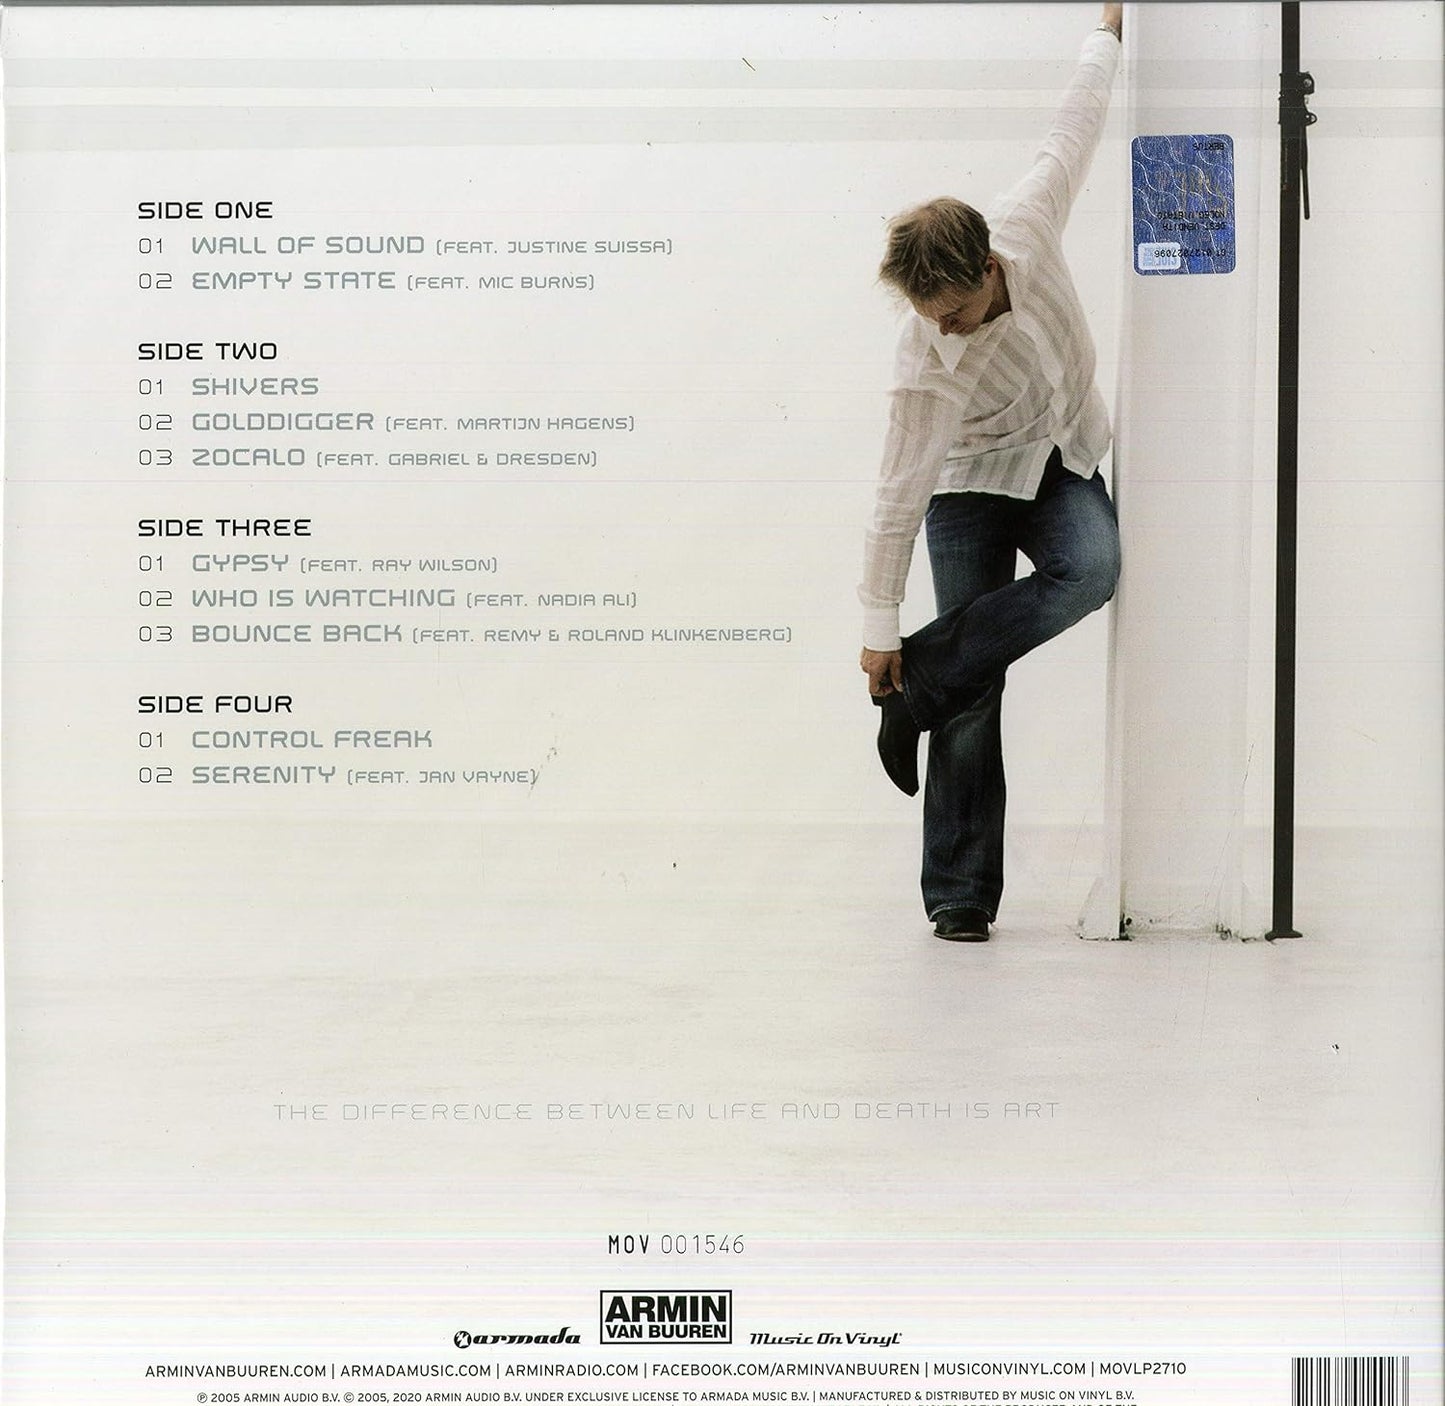 Armin Van Burren - Shivers (2LP LTD) [Music on Vinyl]